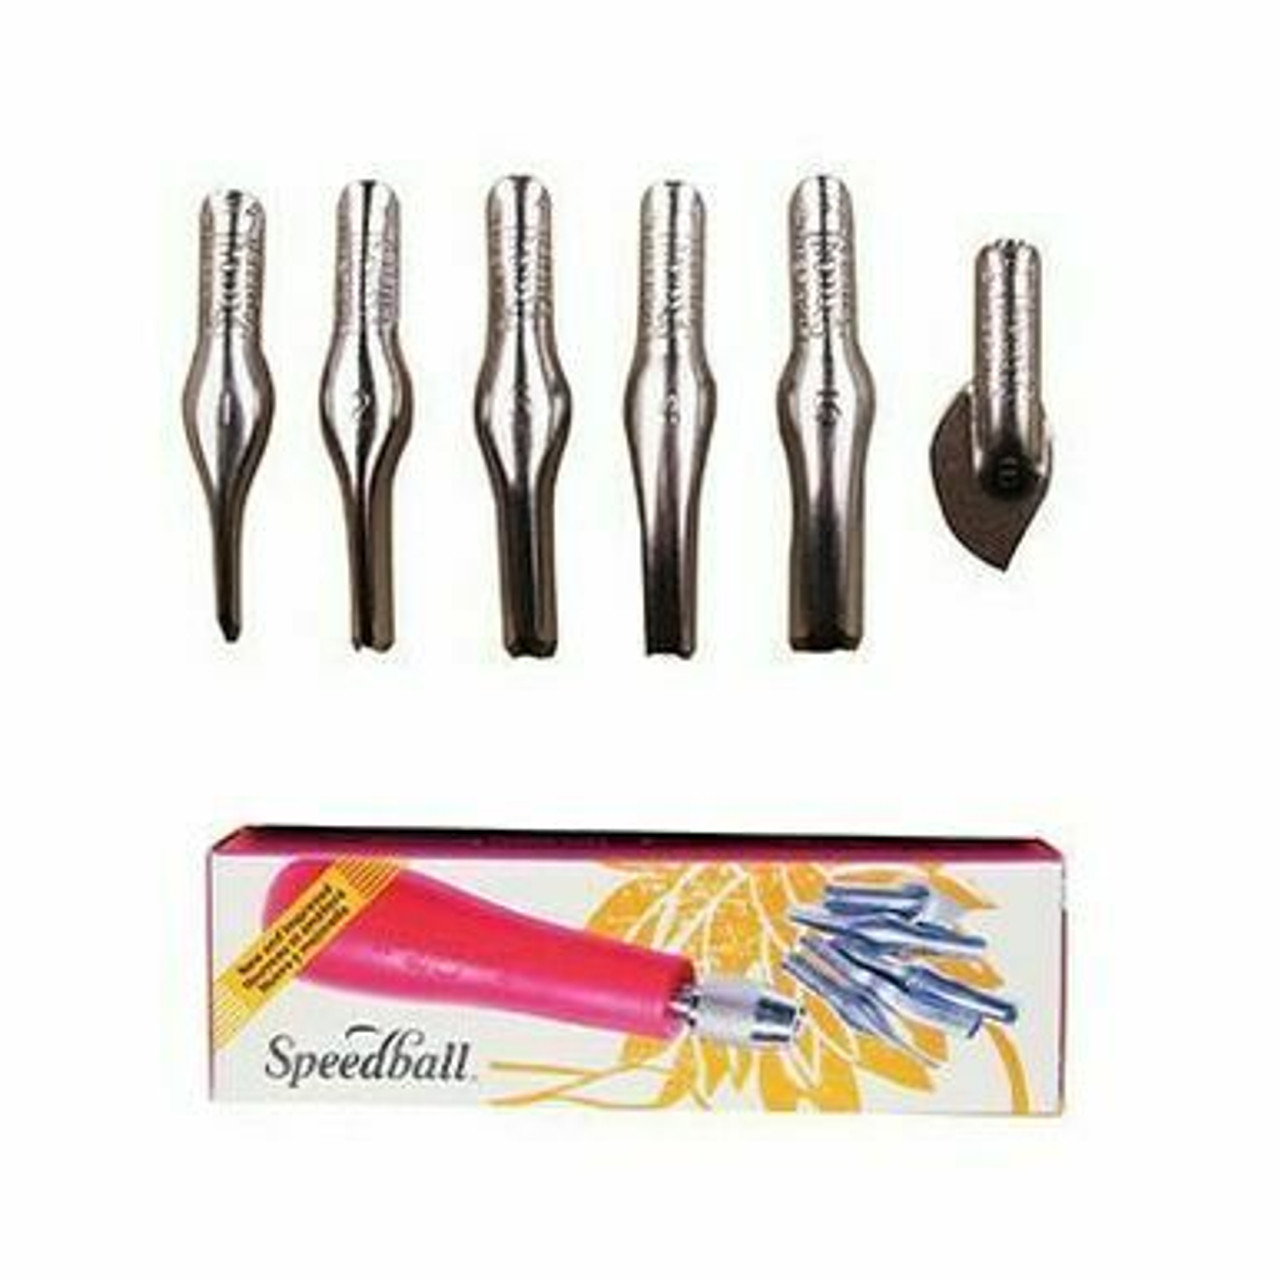 Speedball Lino Tool set of 5